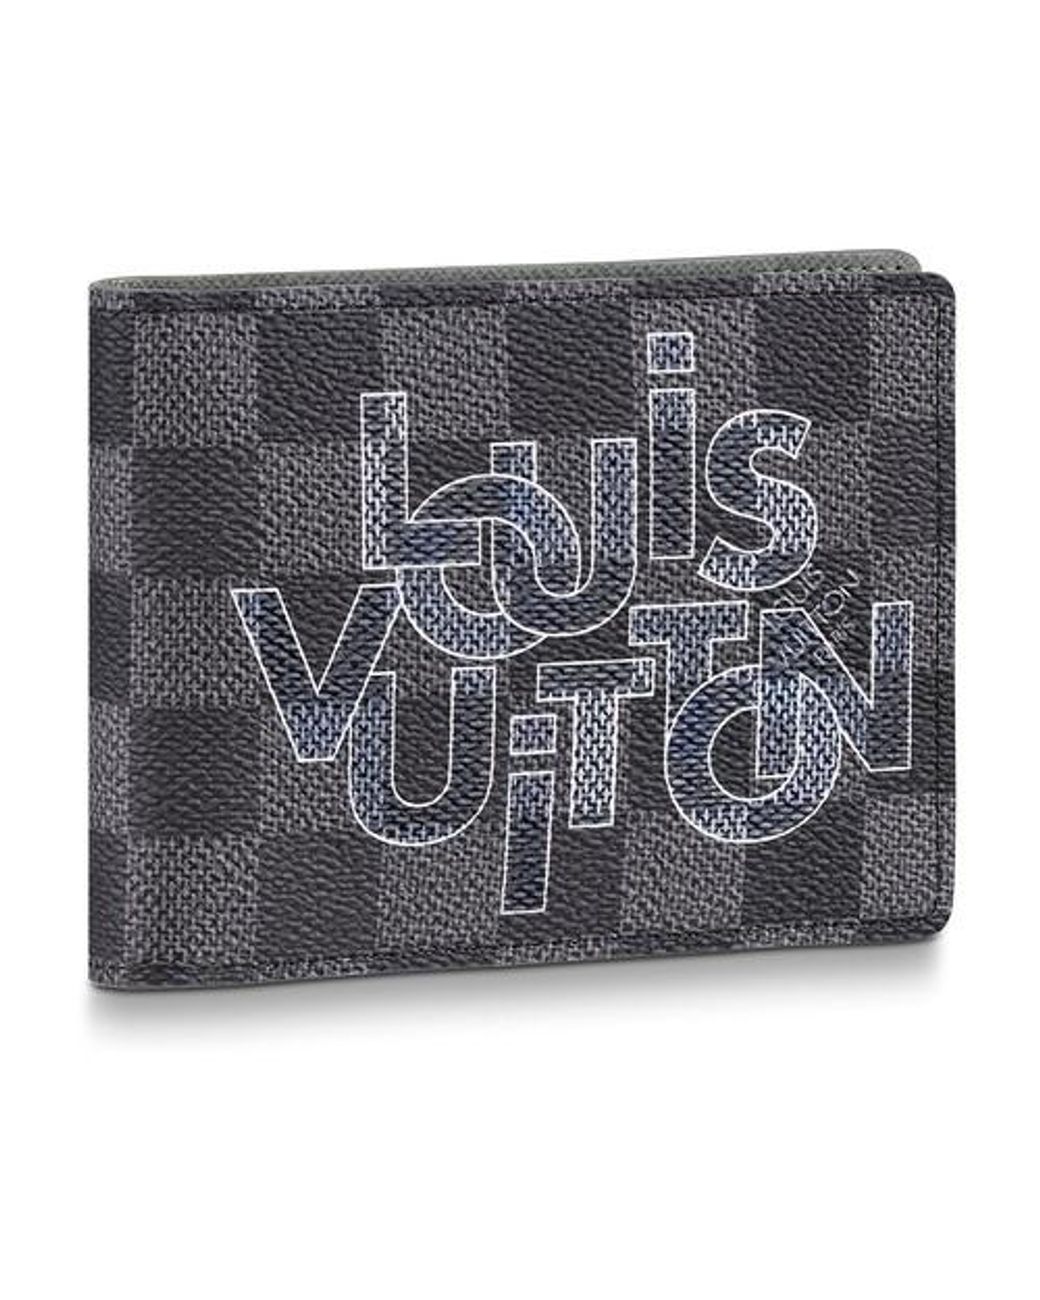 Louis Vuitton Men's Portefeuil Multiple Bifold Wallet